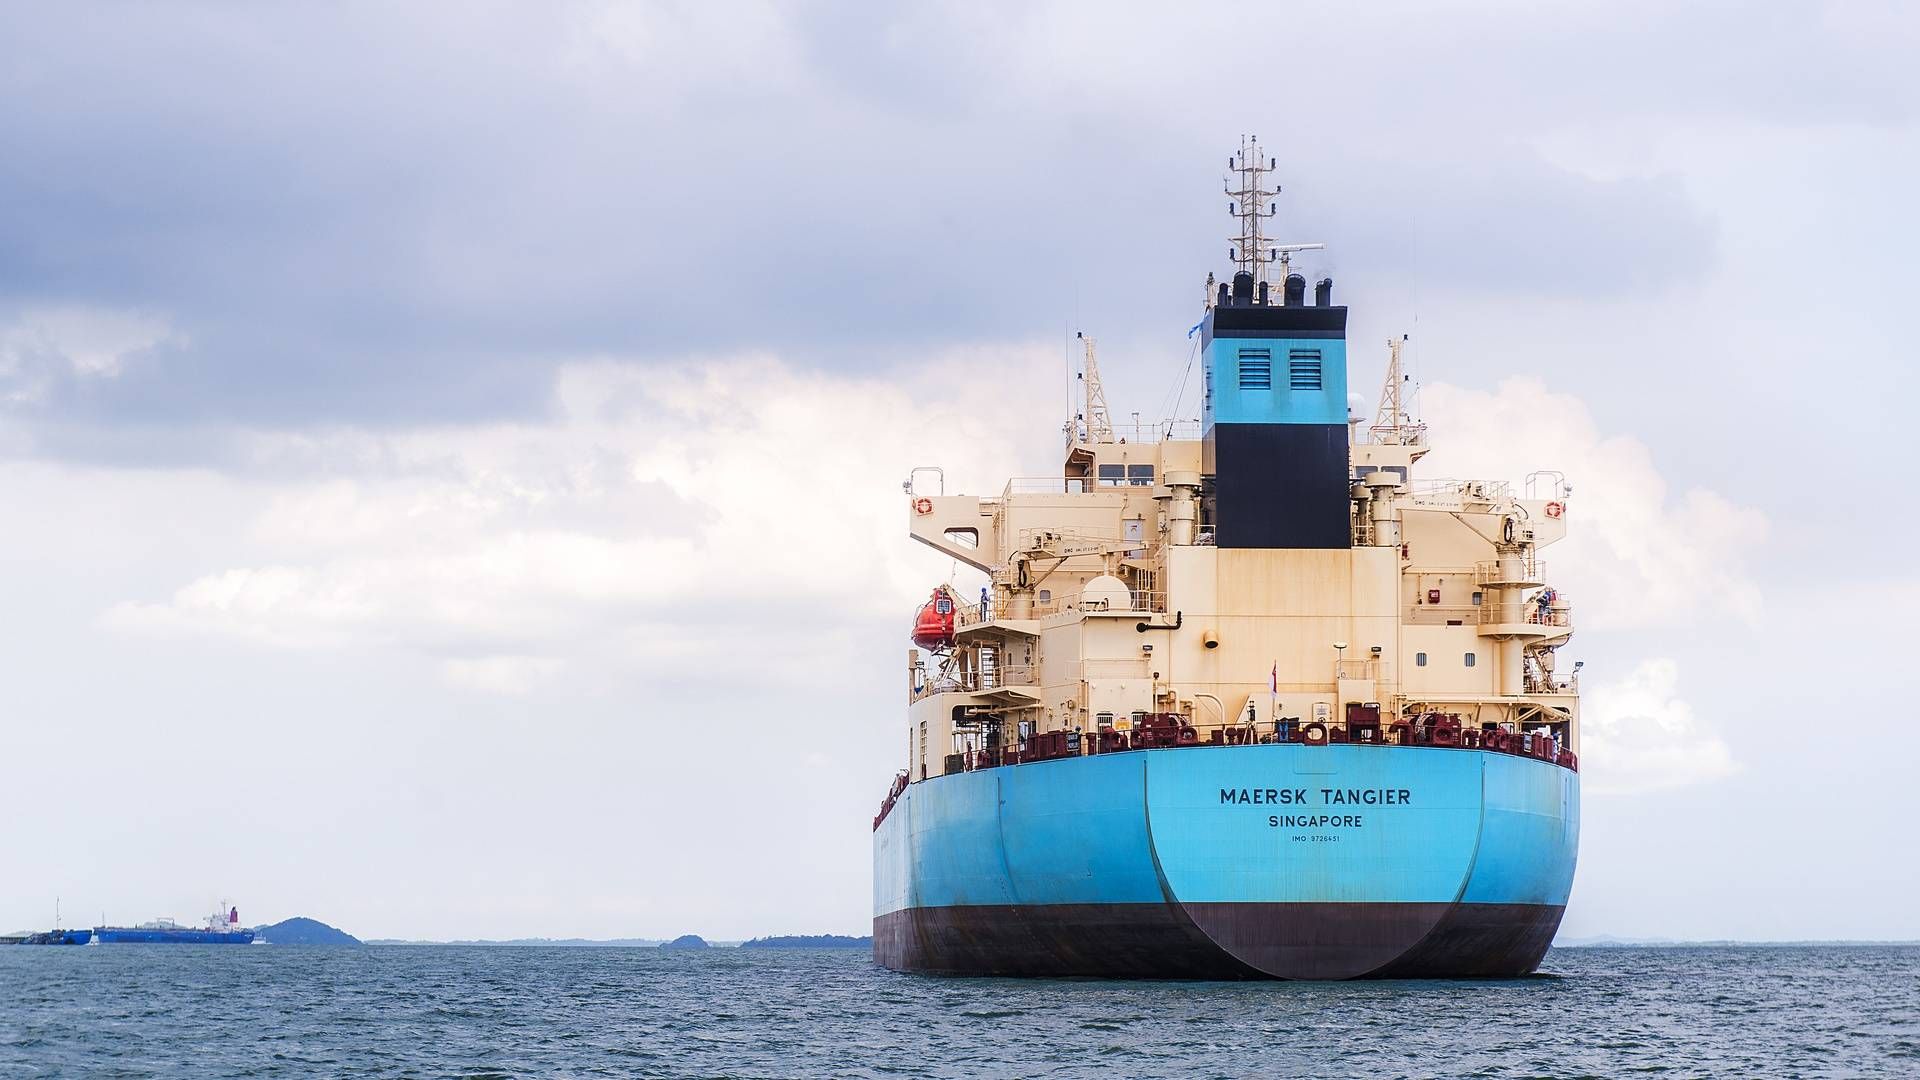 Men tankskibene har dog en mulighed for at skippe sejlads gennem Det Røde Hav og Suez-kanalen og finde alternative ruter, skriver Bloomberg, der har set en meddelelse fra Maersk Tankers. | Foto: Pr/maersk Tankers